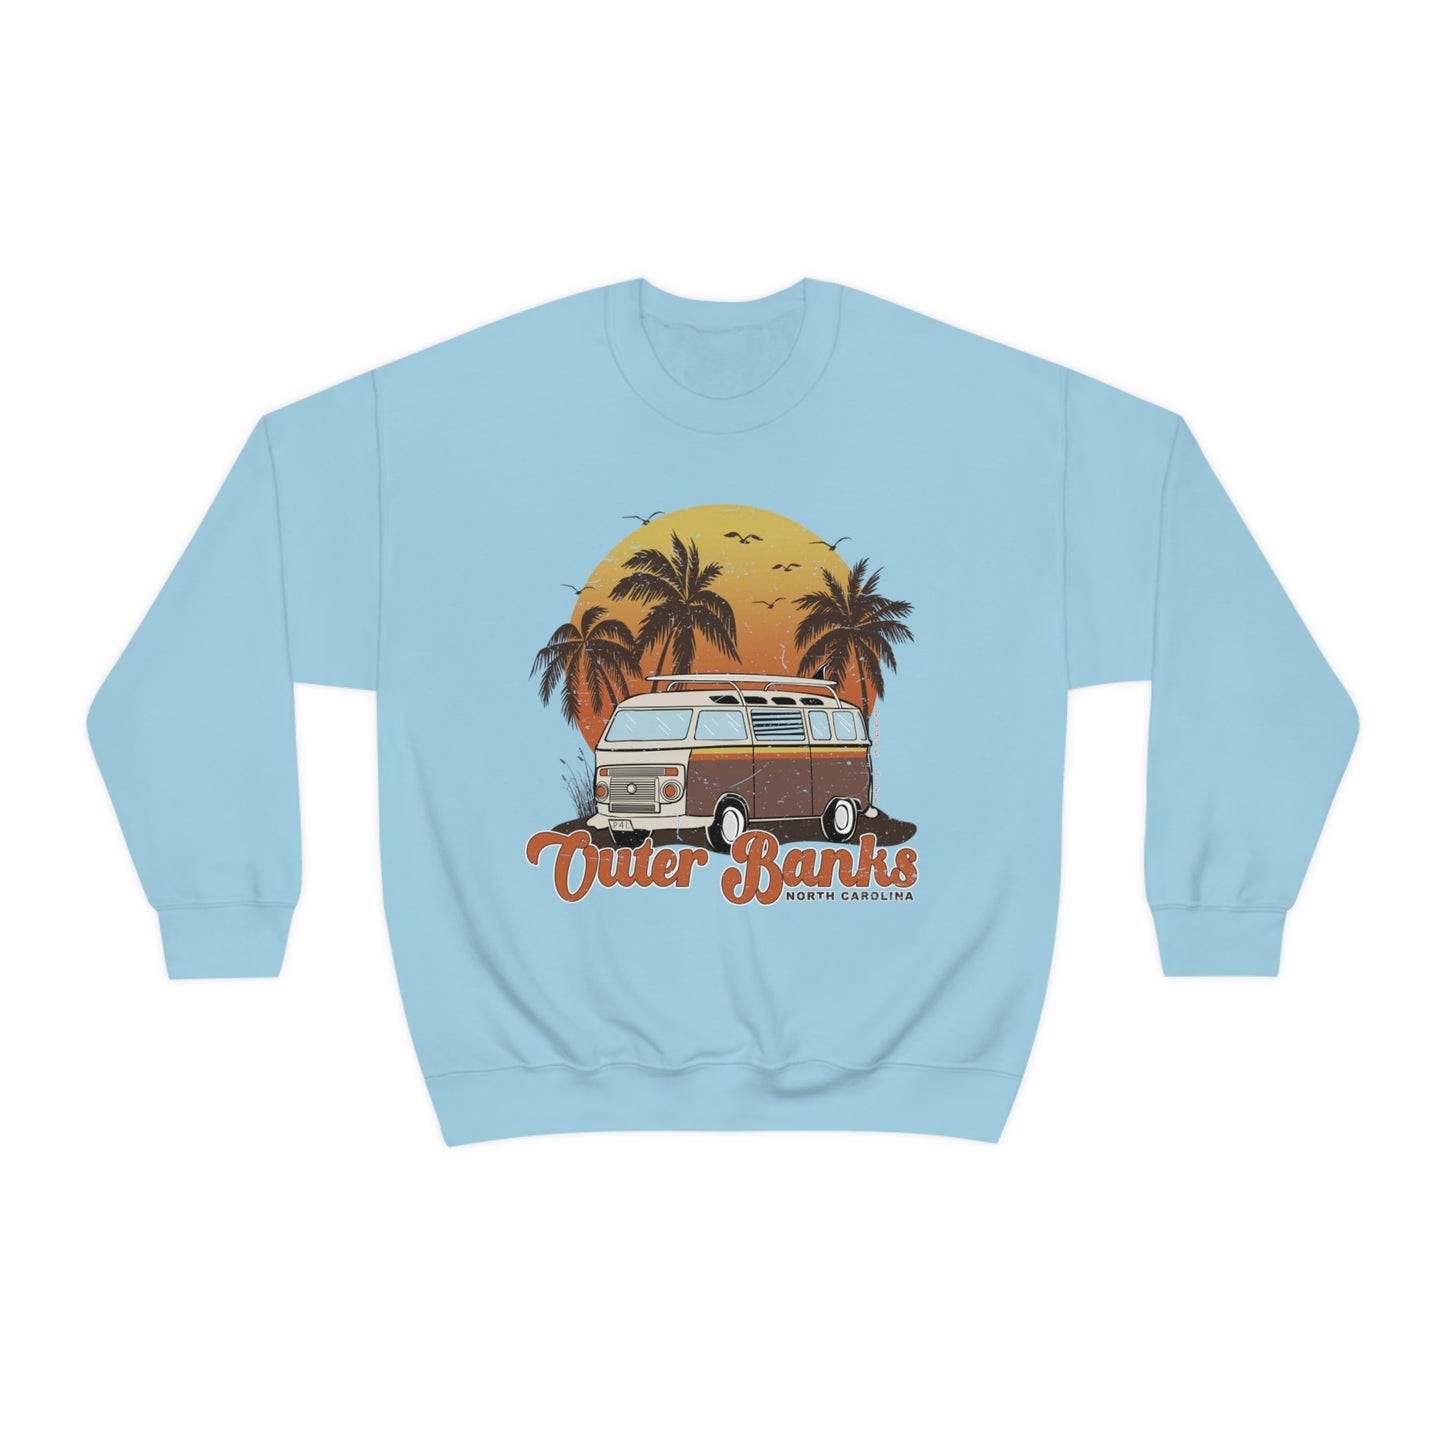 Outer Banks North Carolina Sweatshirt